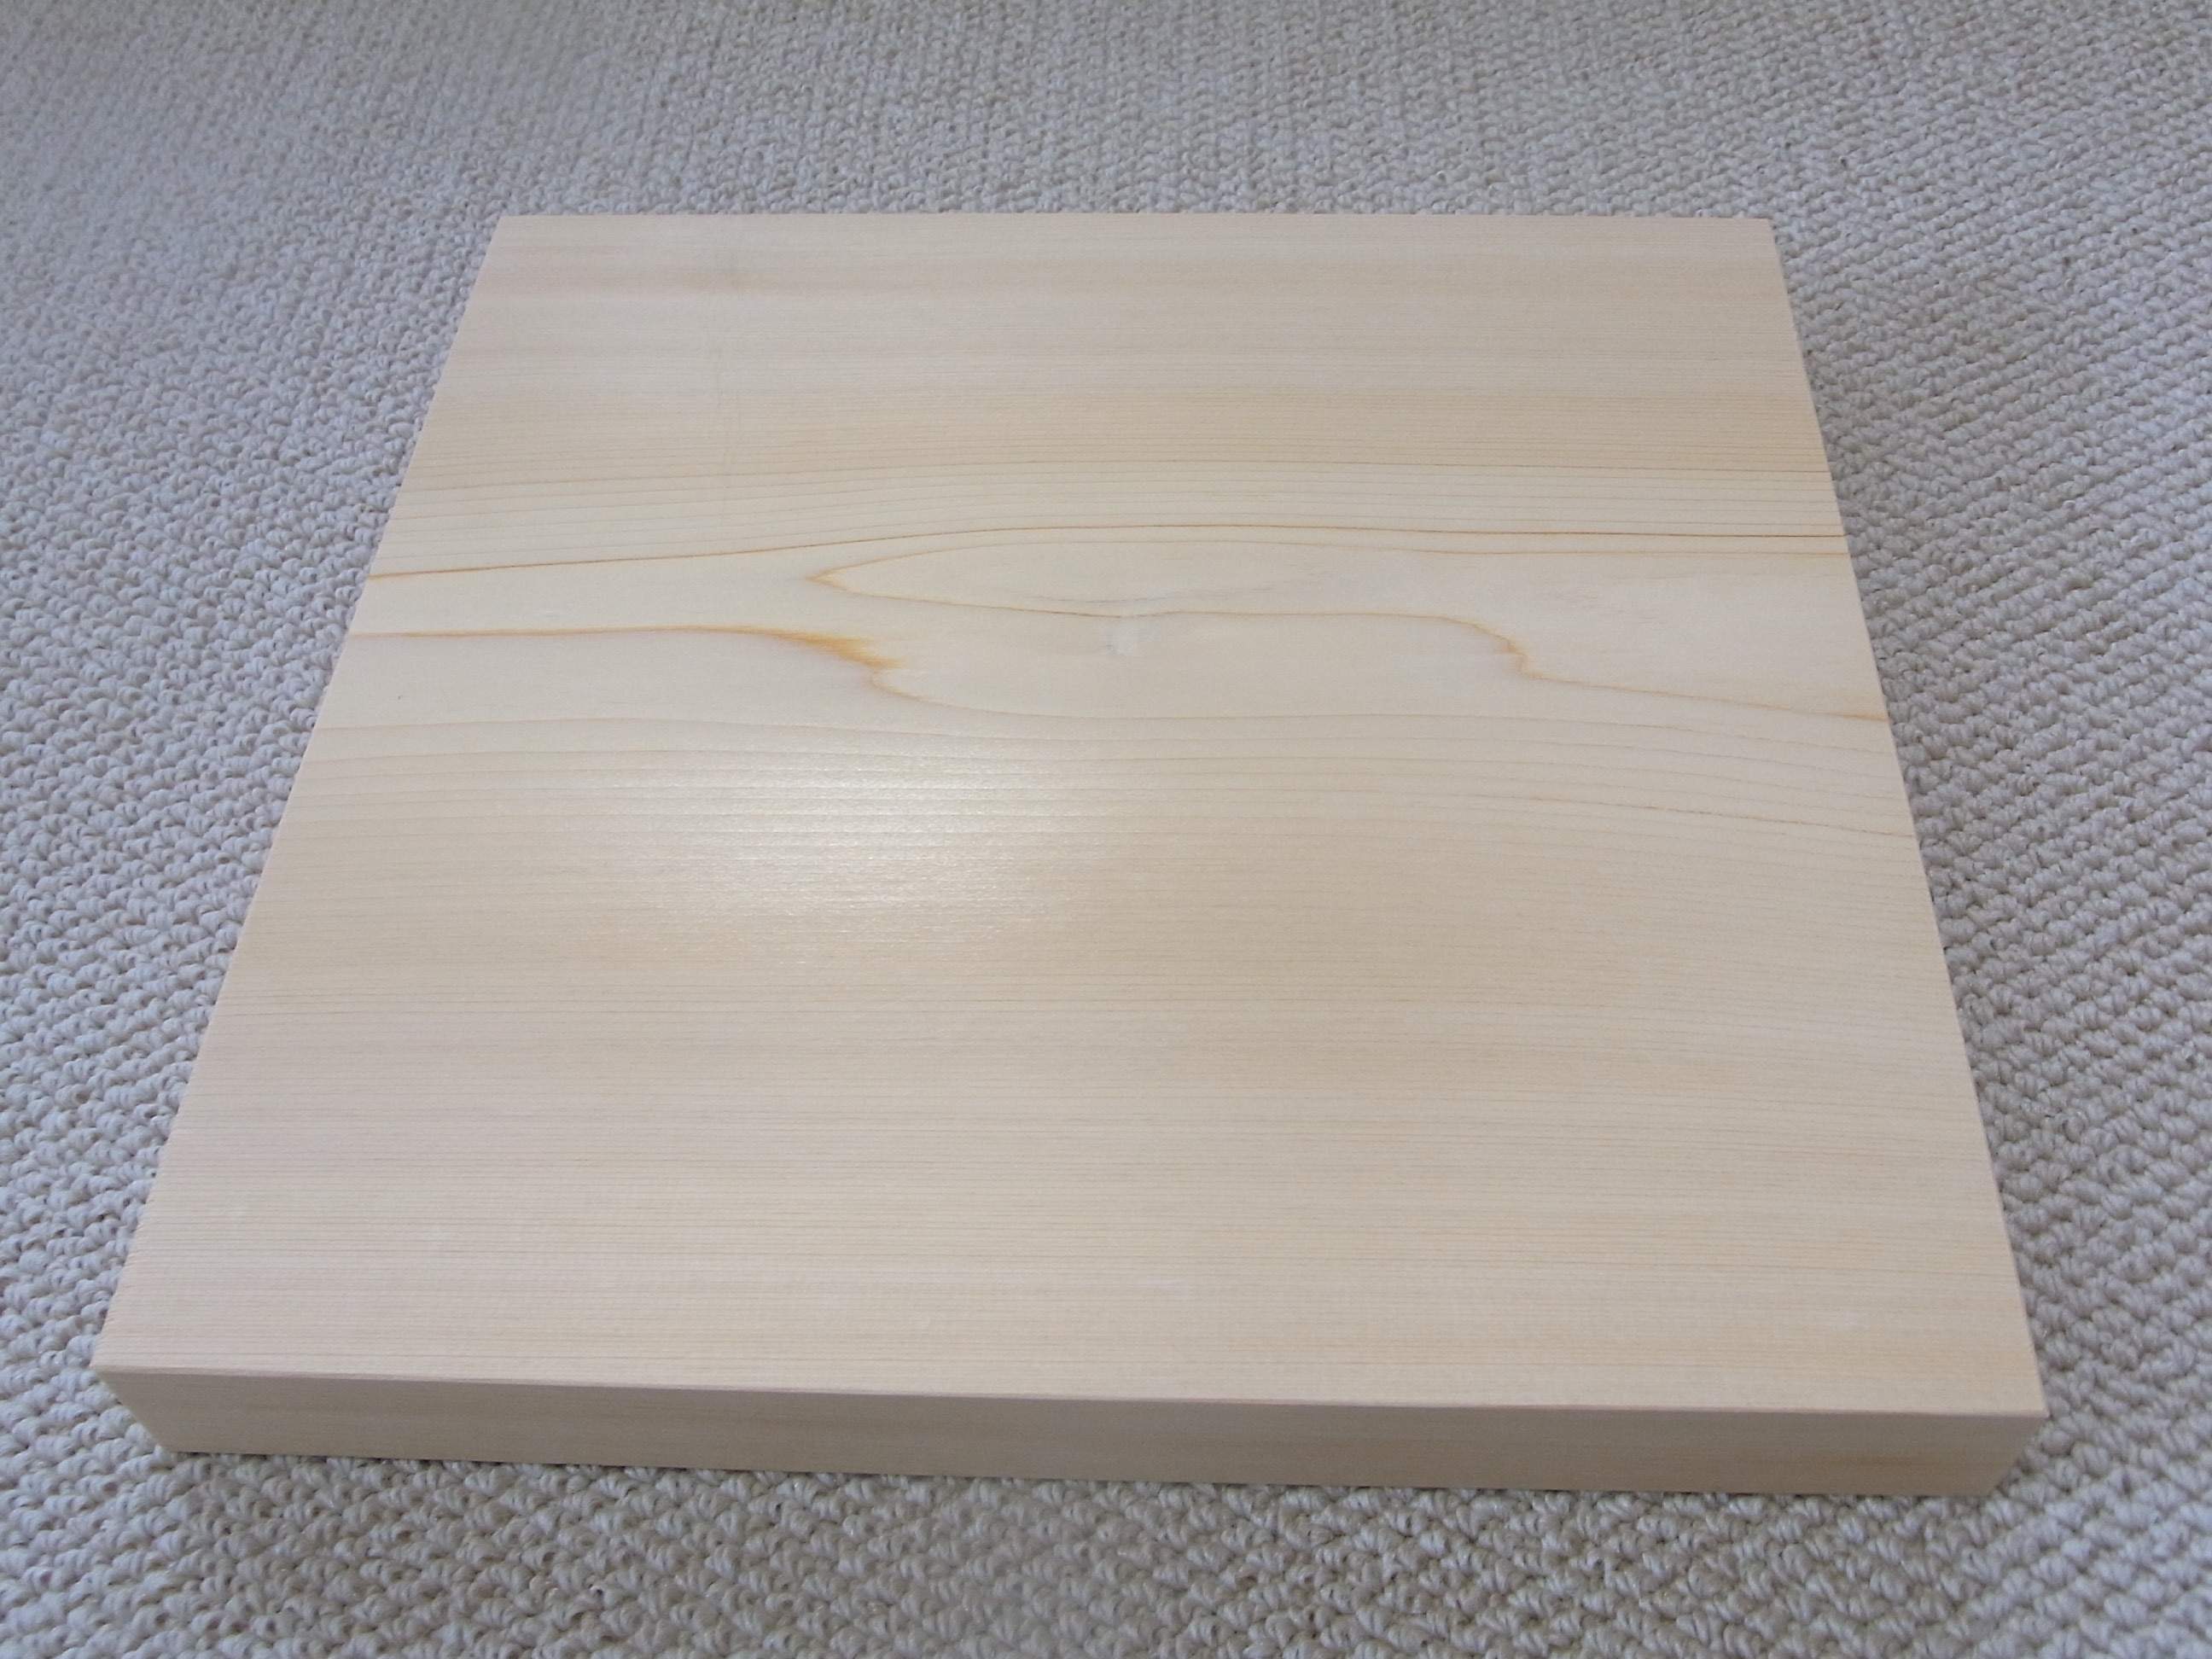 美吉野キッチンの正方形ひのきまな板です